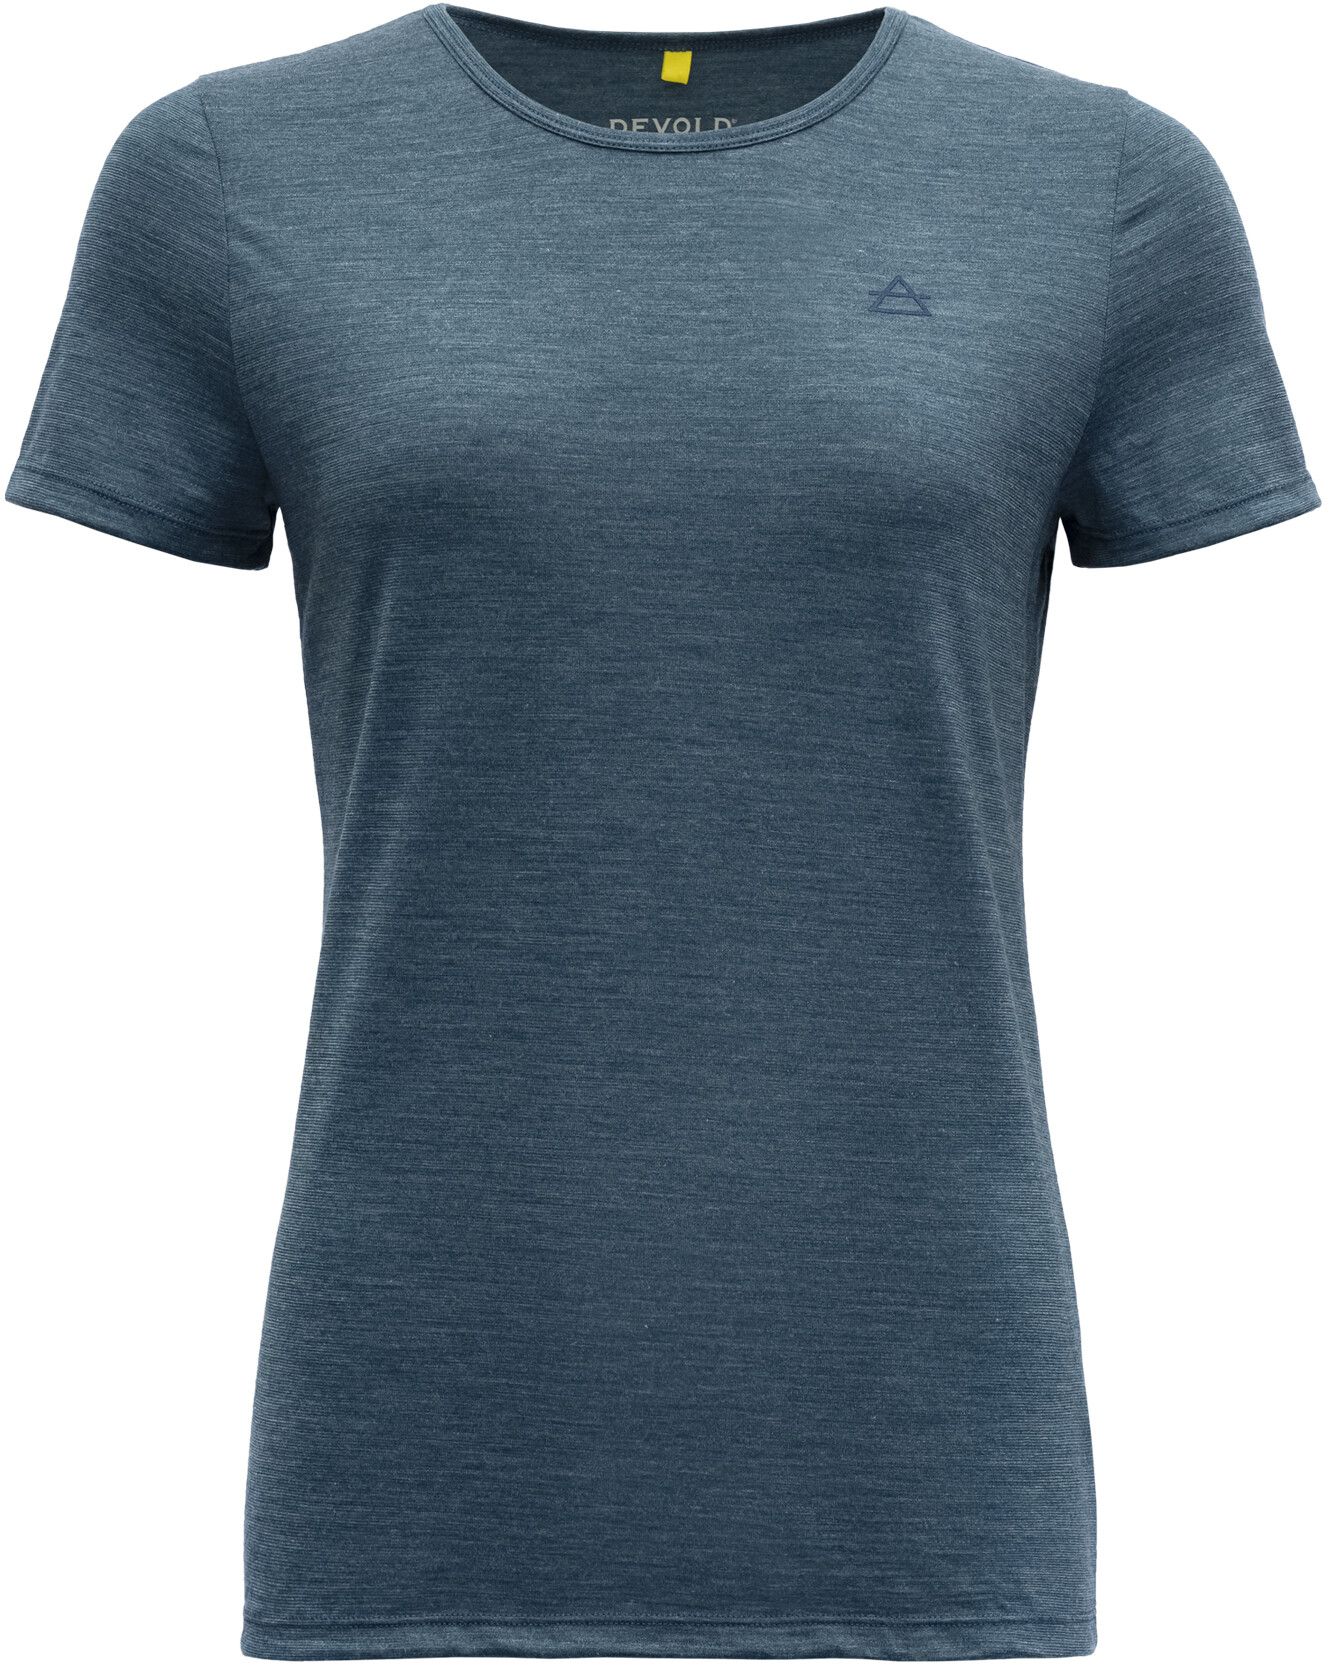 Camisa/Camiseta para Mujer Devold Shirt Expedition Woman